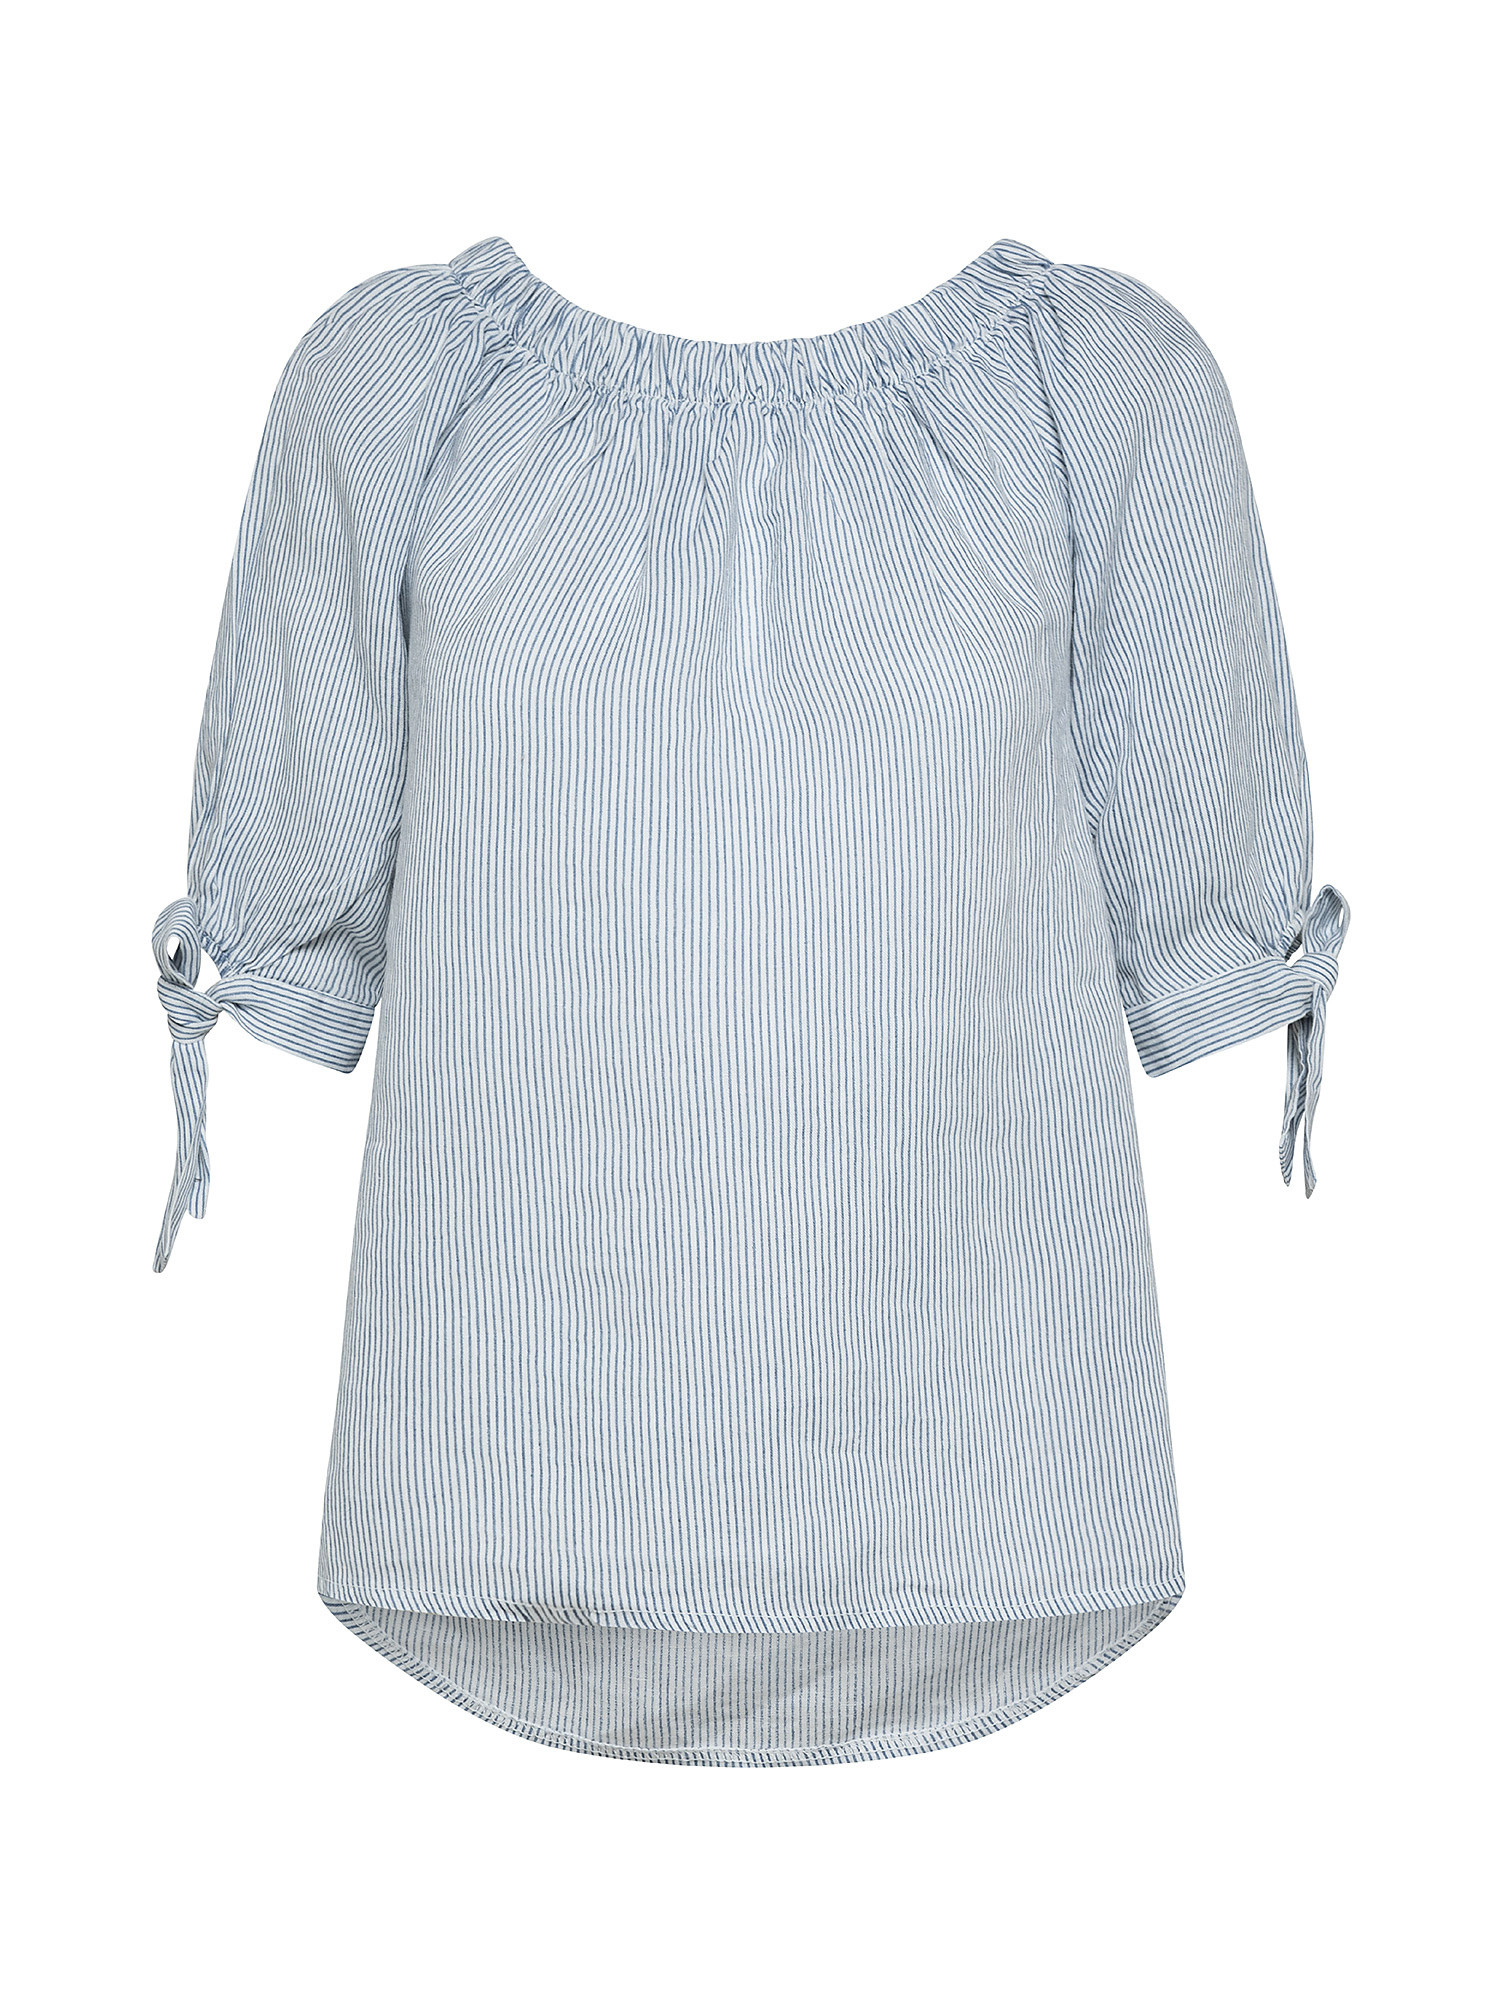 Blusa puro lino scollo arricciato con fiocco, Denim, large image number 0